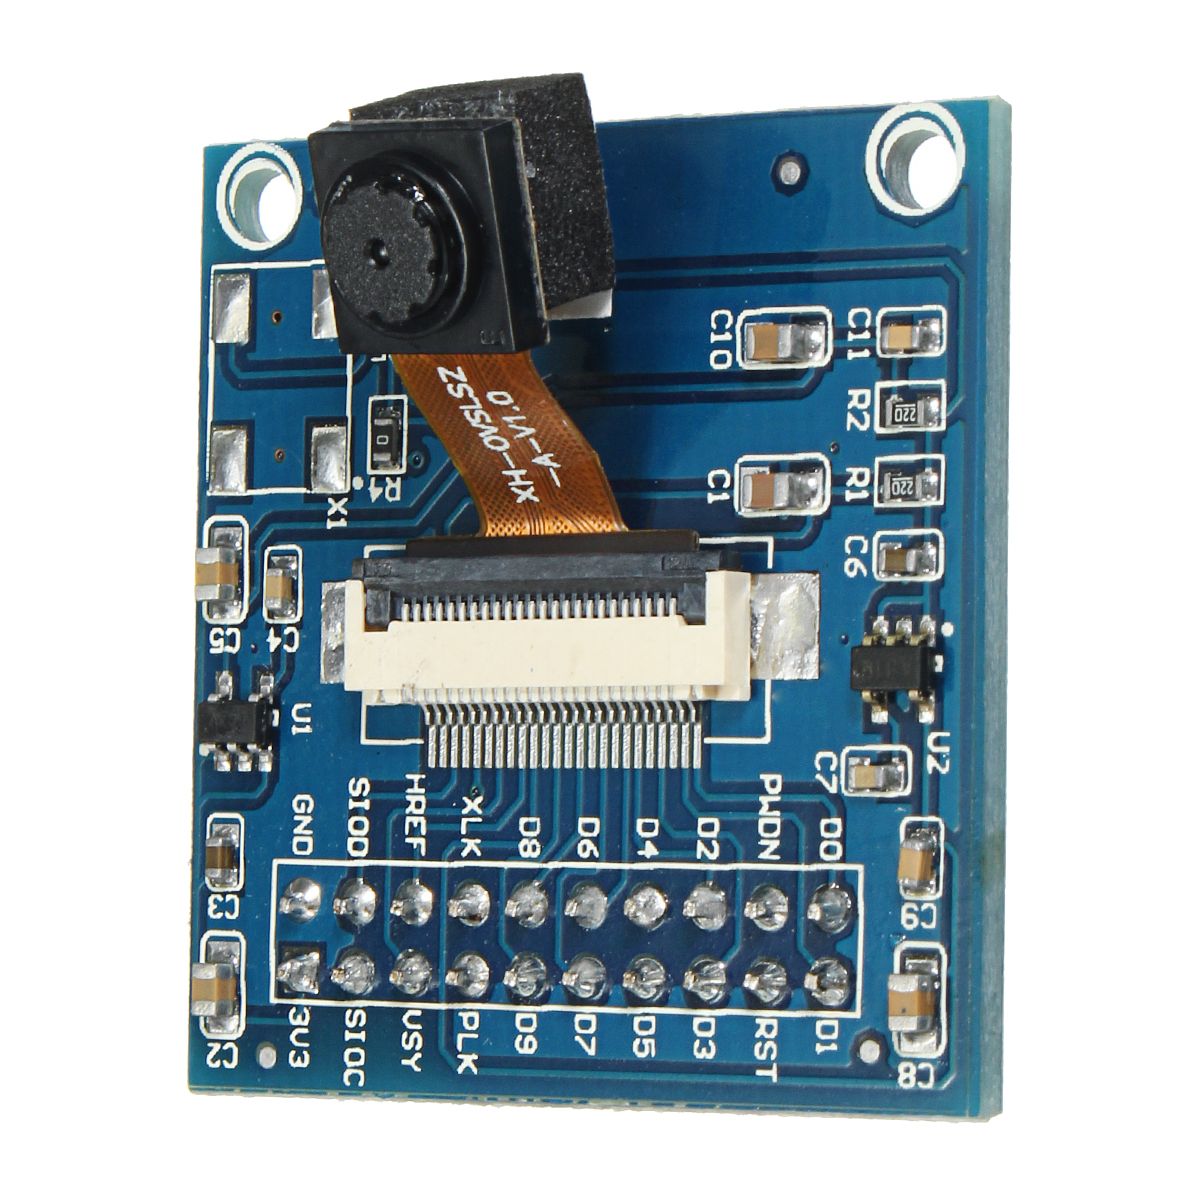 Geekcreitreg-VGA-OV7670-CMOS-Camera-Module-Lens-CMOS-640X480-SCCB-With-I2C-Interface-1320365